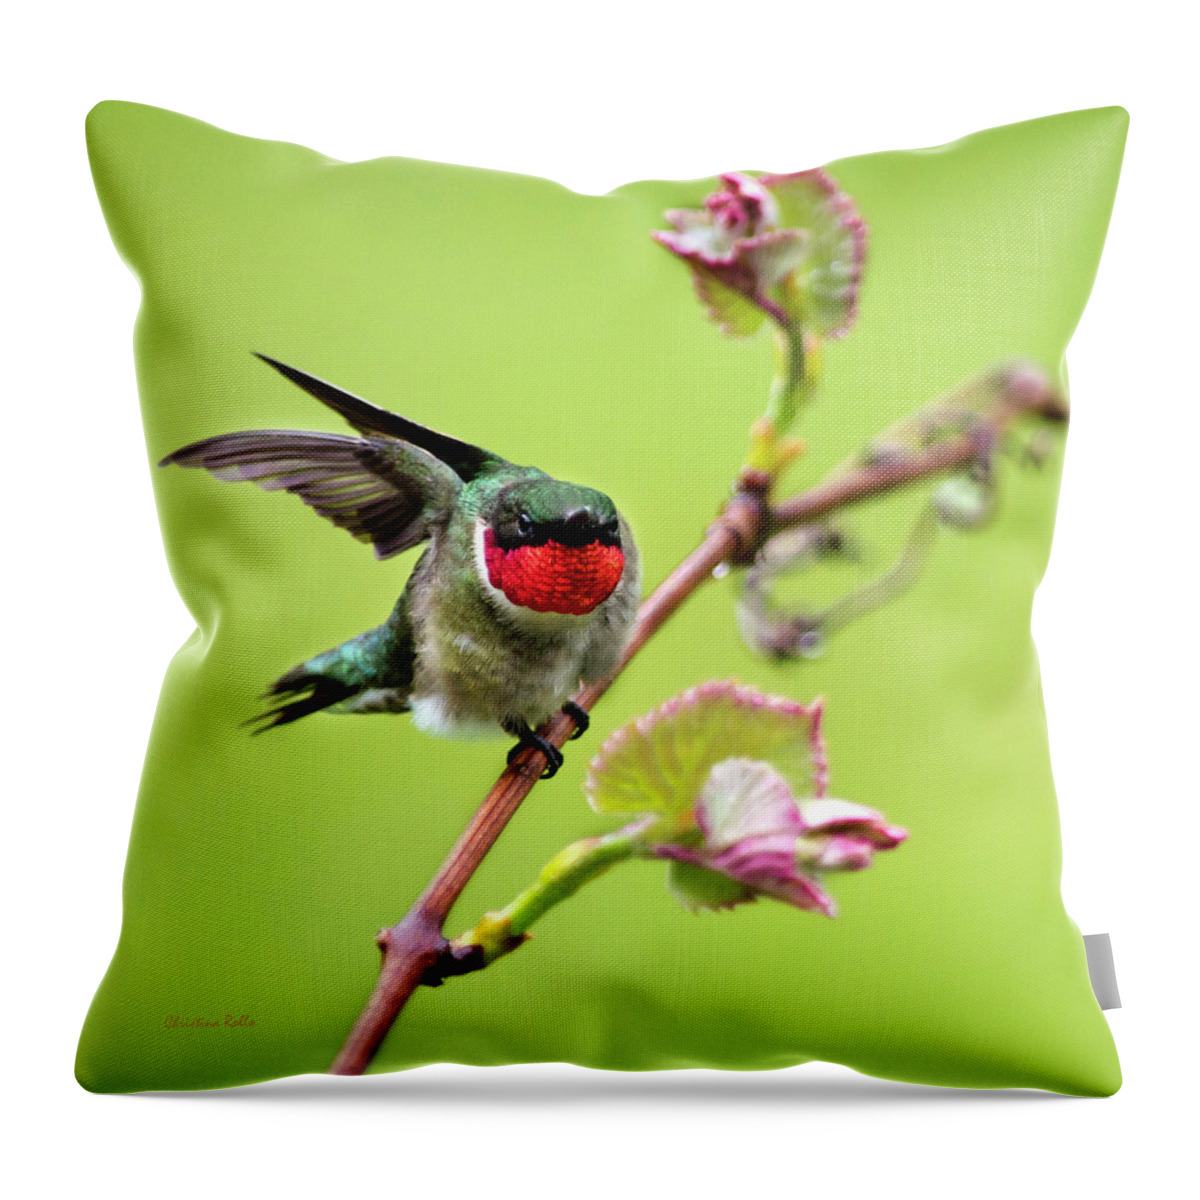 Birds Throw Pillow featuring the photograph Ruby Garden Hummingbird by Christina Rollo